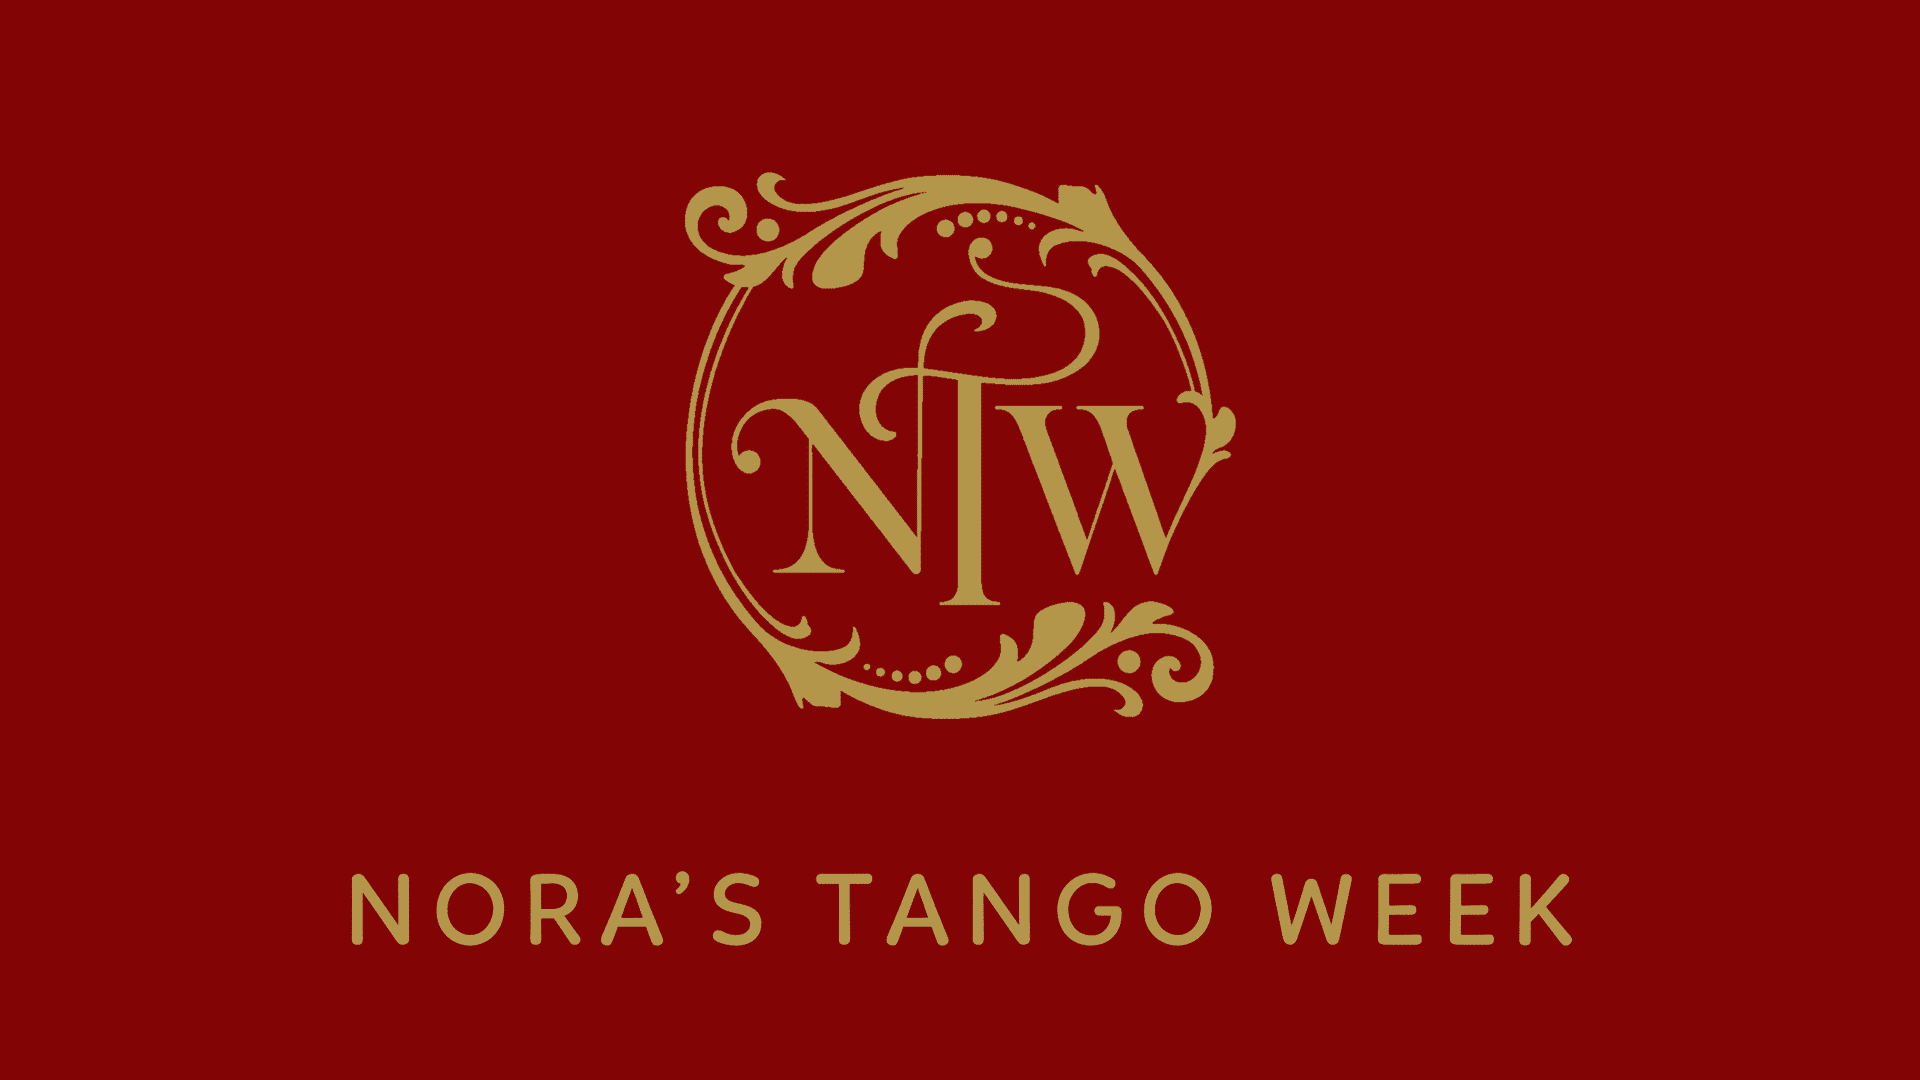 Nora's Tango Week